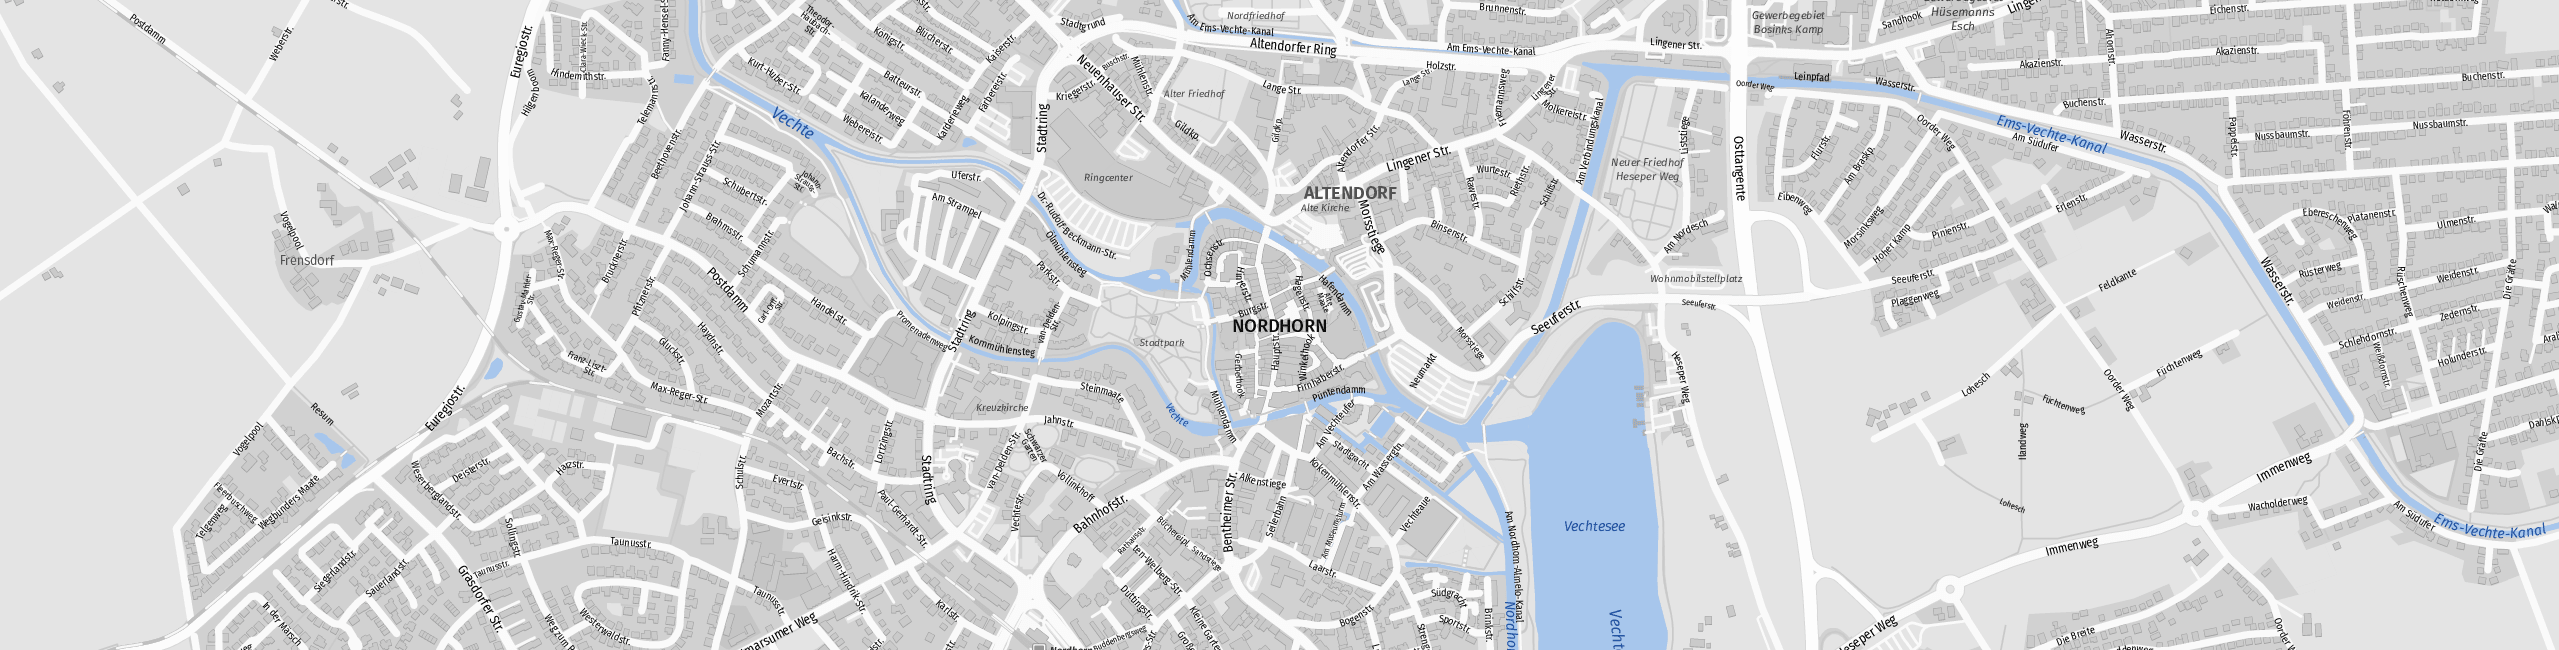 Stadtplan Nordhorn zum Downloaden.